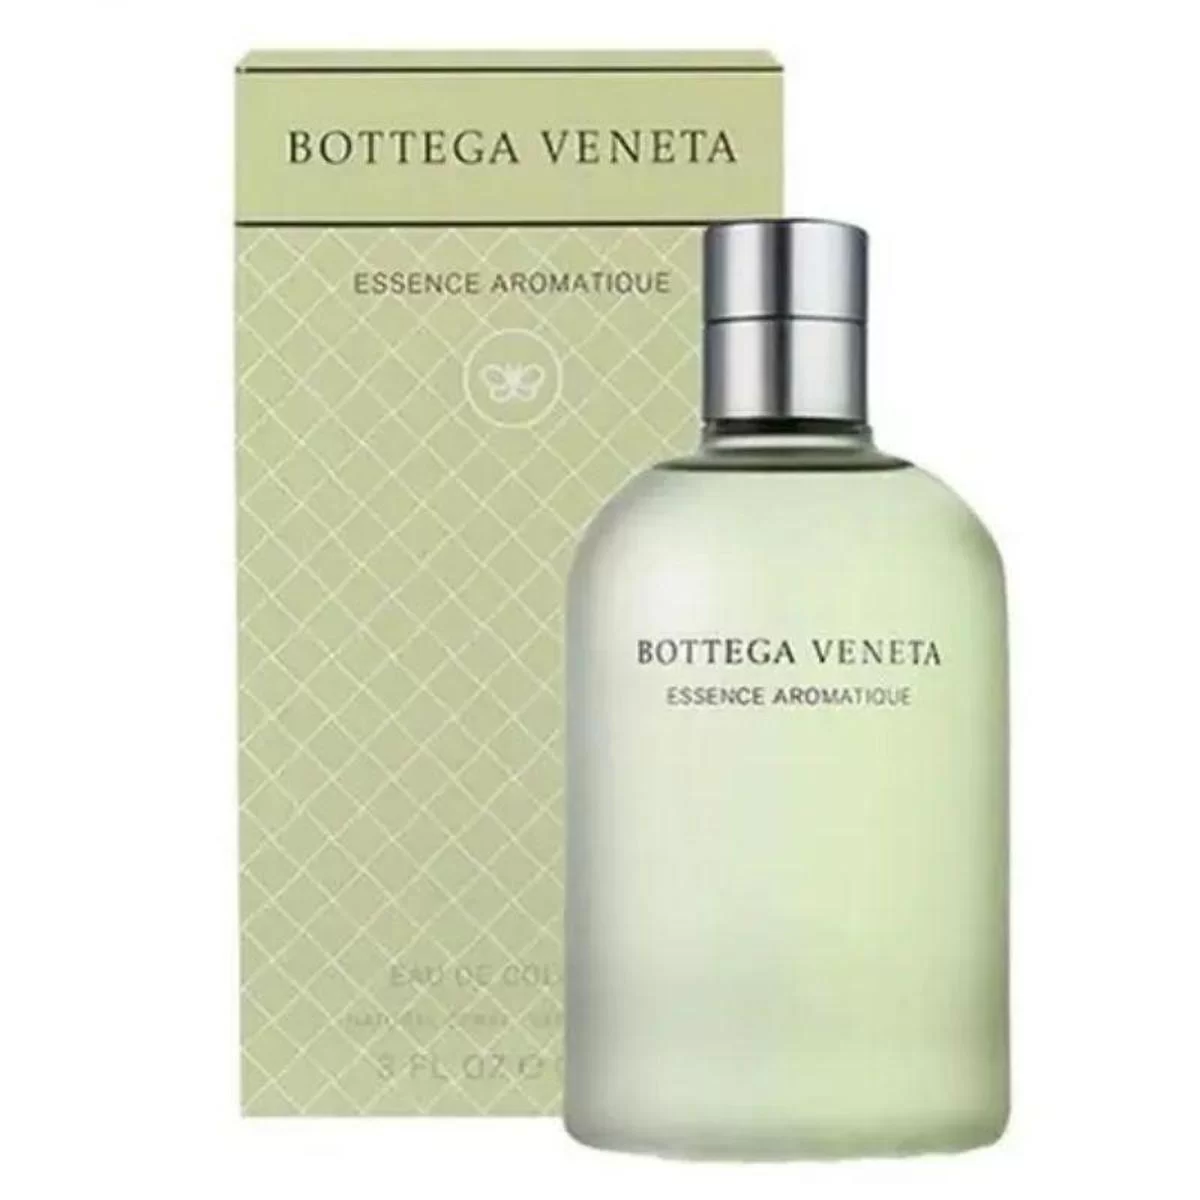 Bottega Veneta Essence Aromatique Cologne 90ml